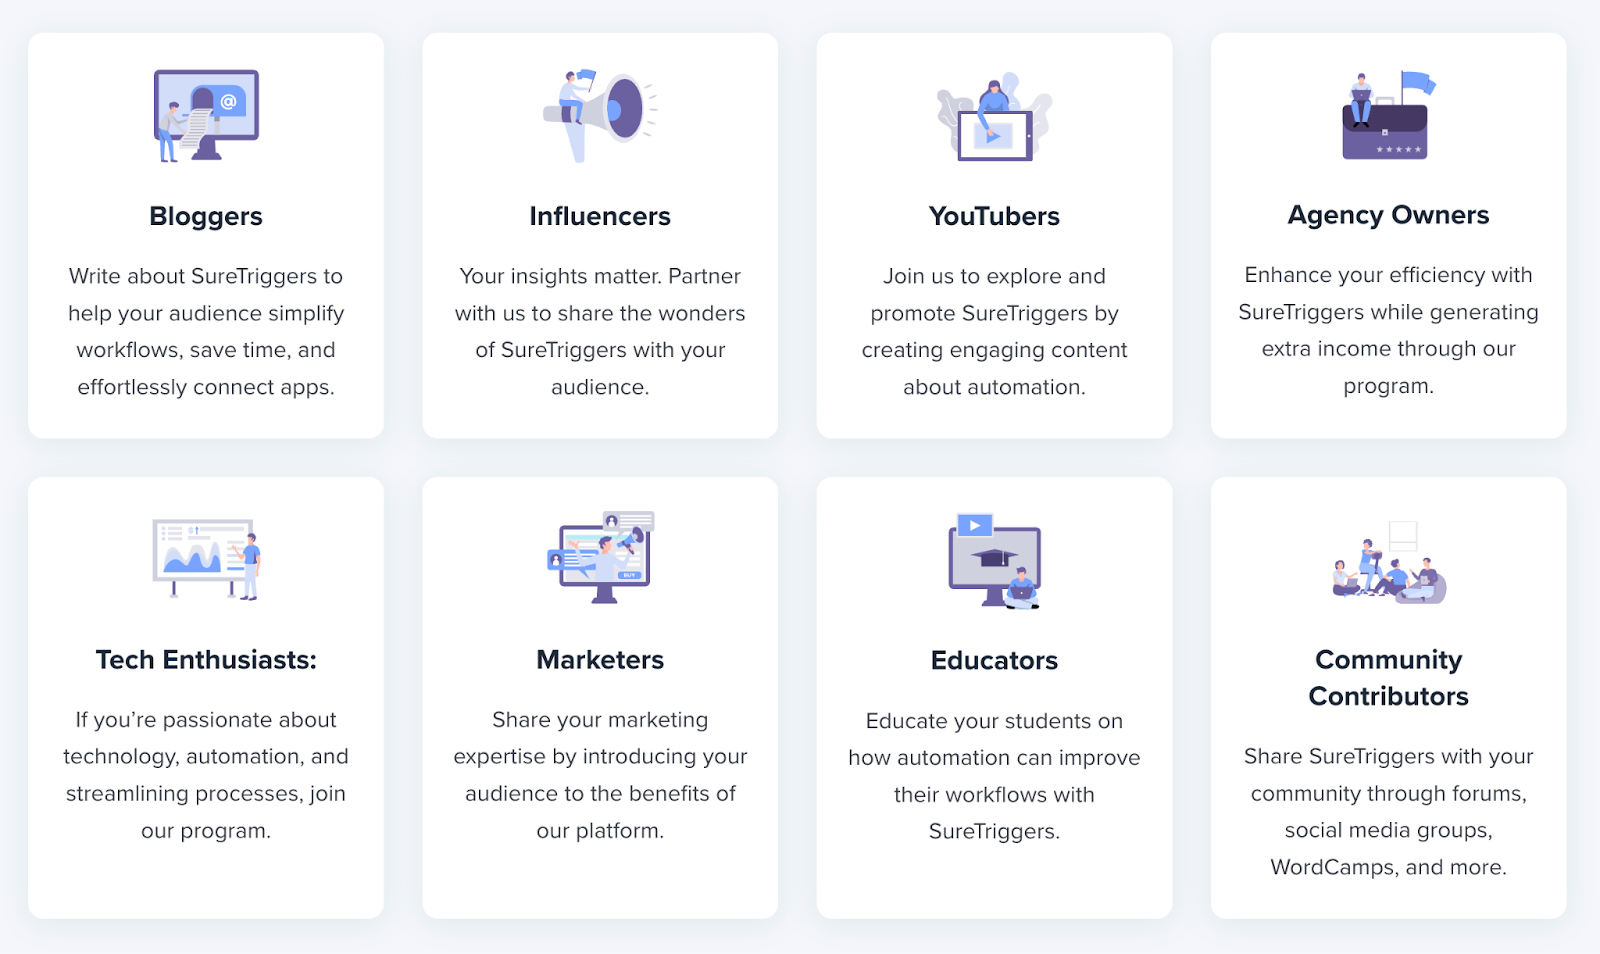 Categories of content creators